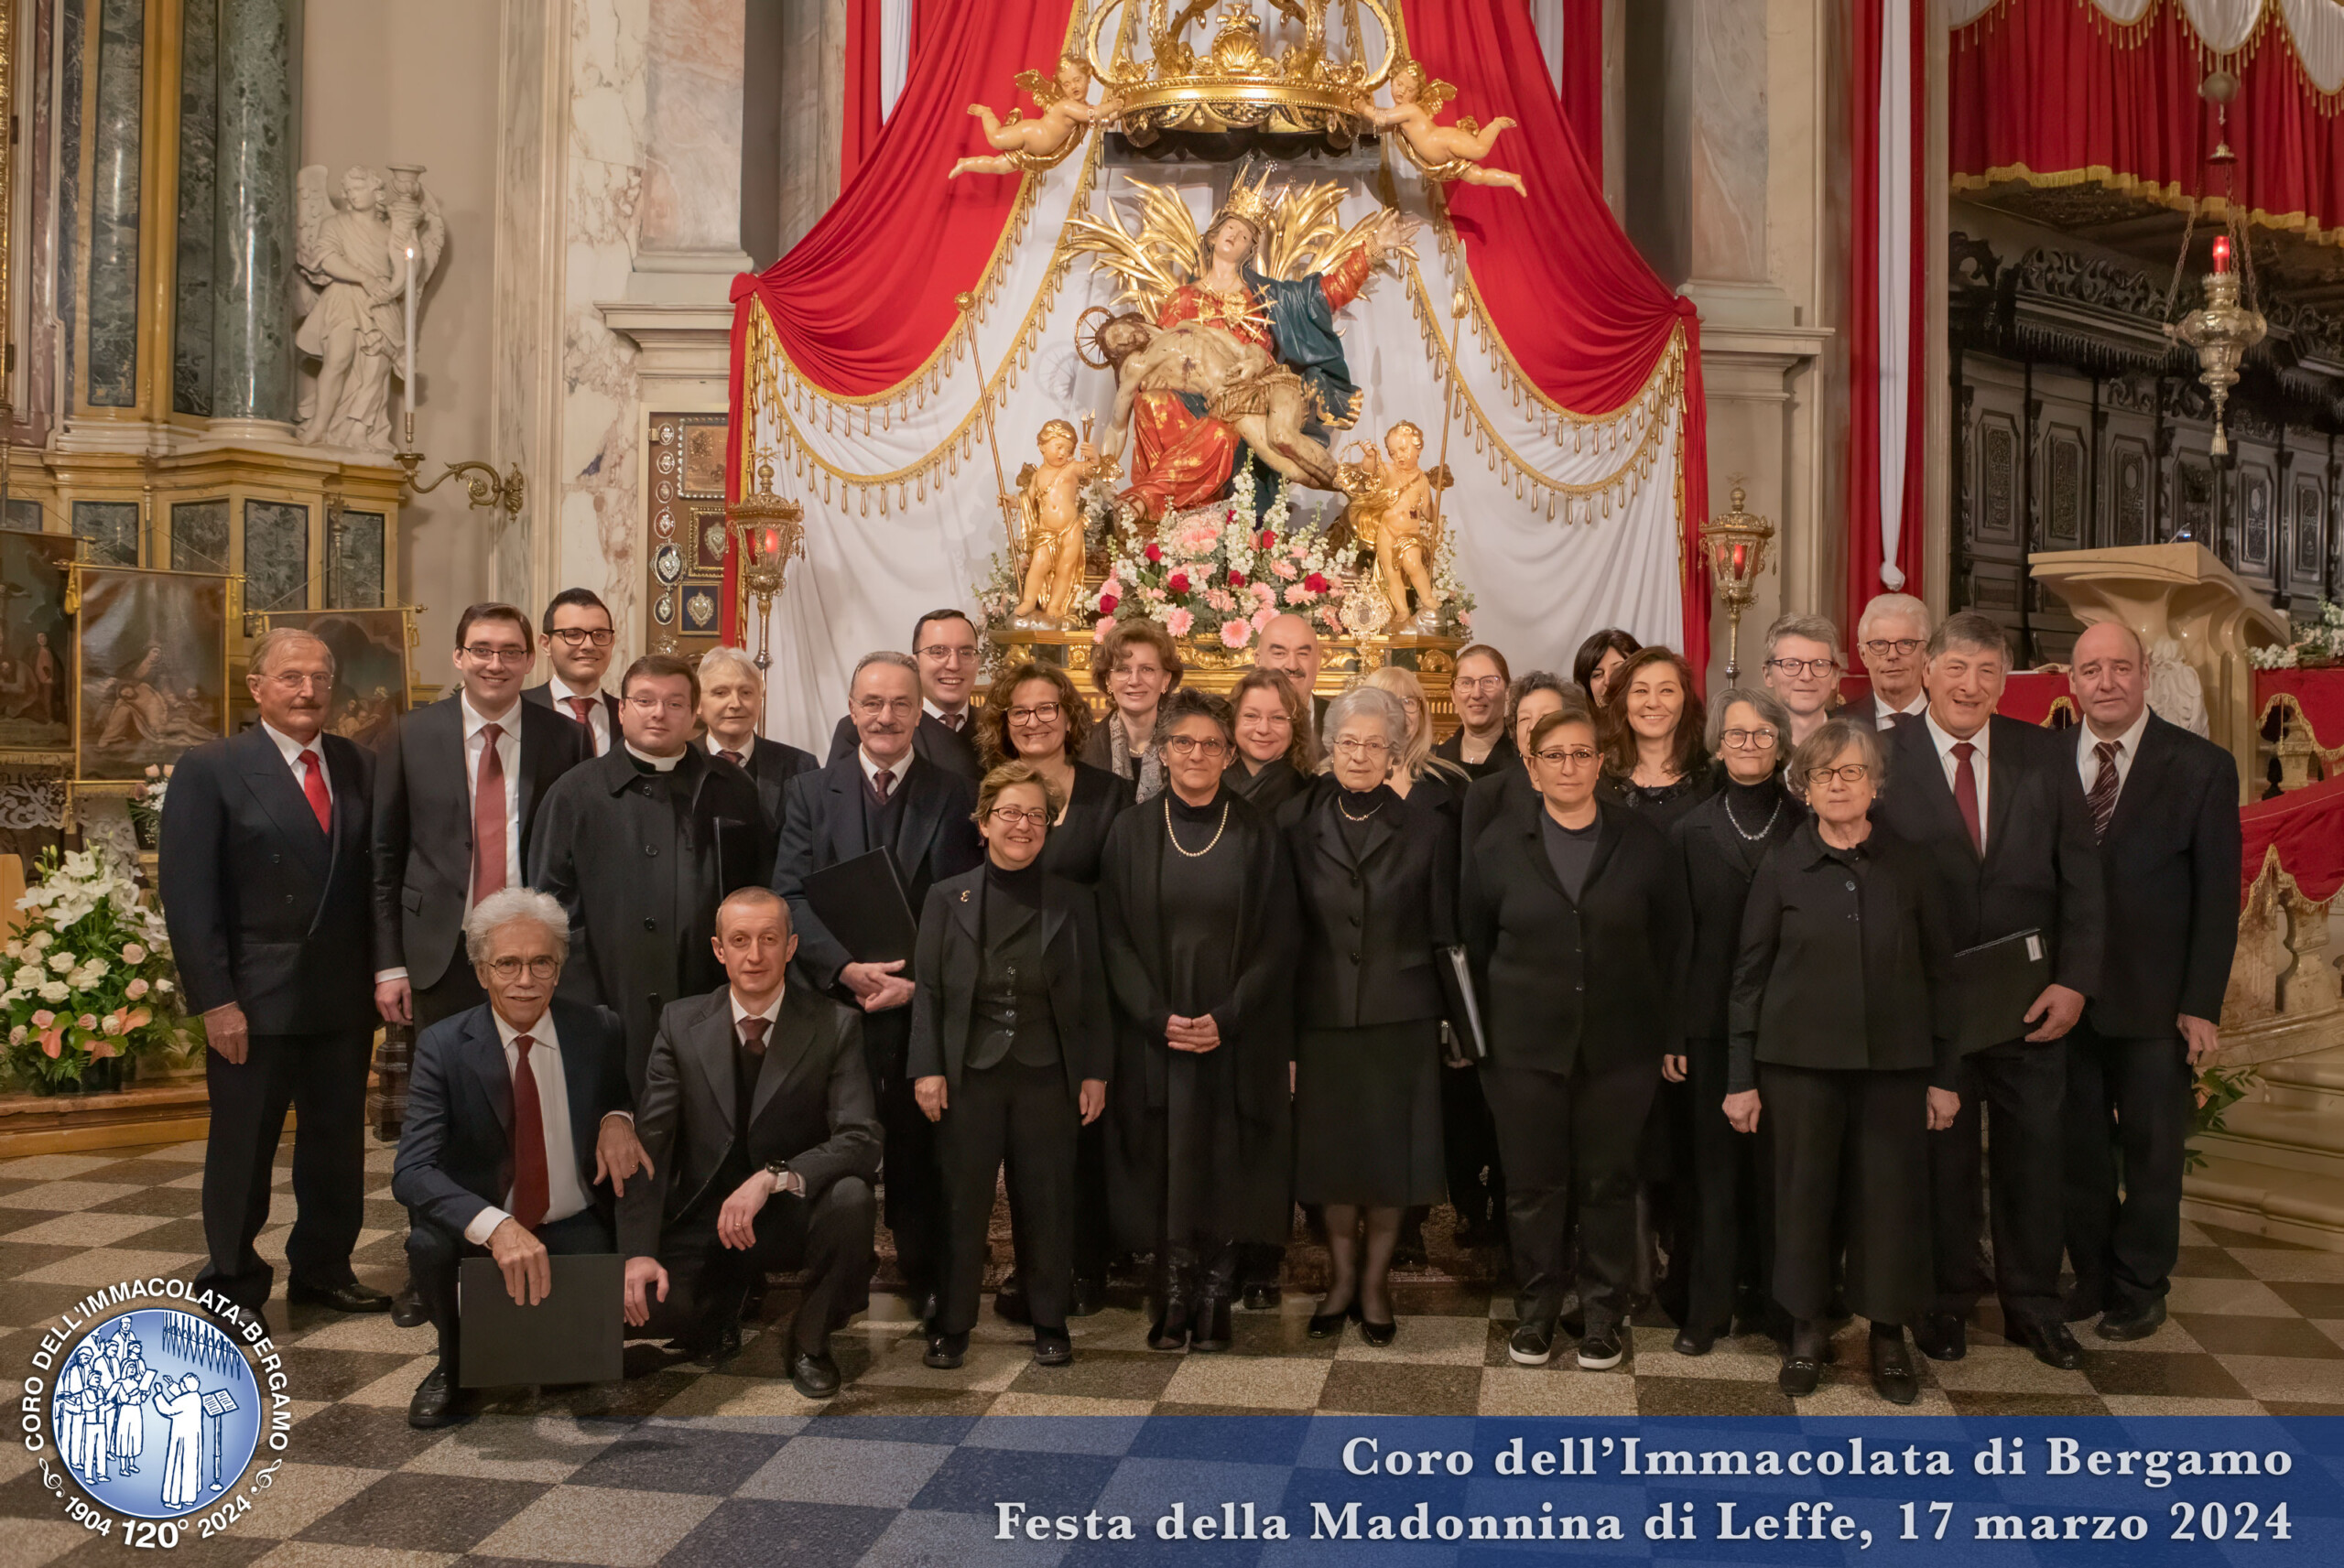 Coro dell'immacolata di Bergamo - Natale 2023